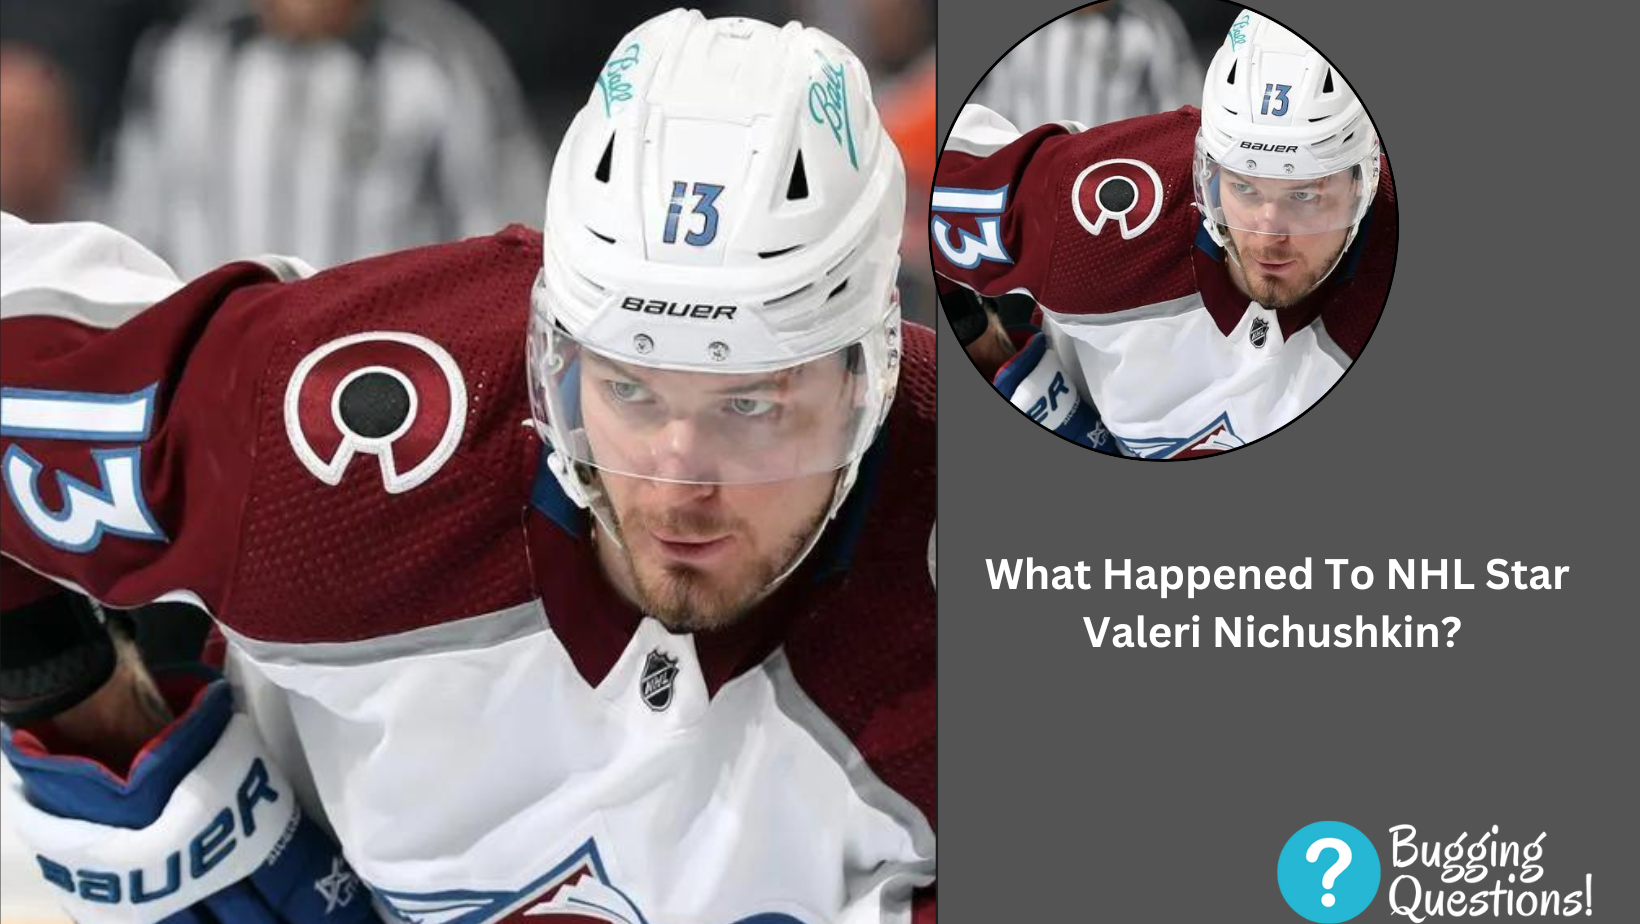 What Happened To NHL Star Valeri Nichushkin?